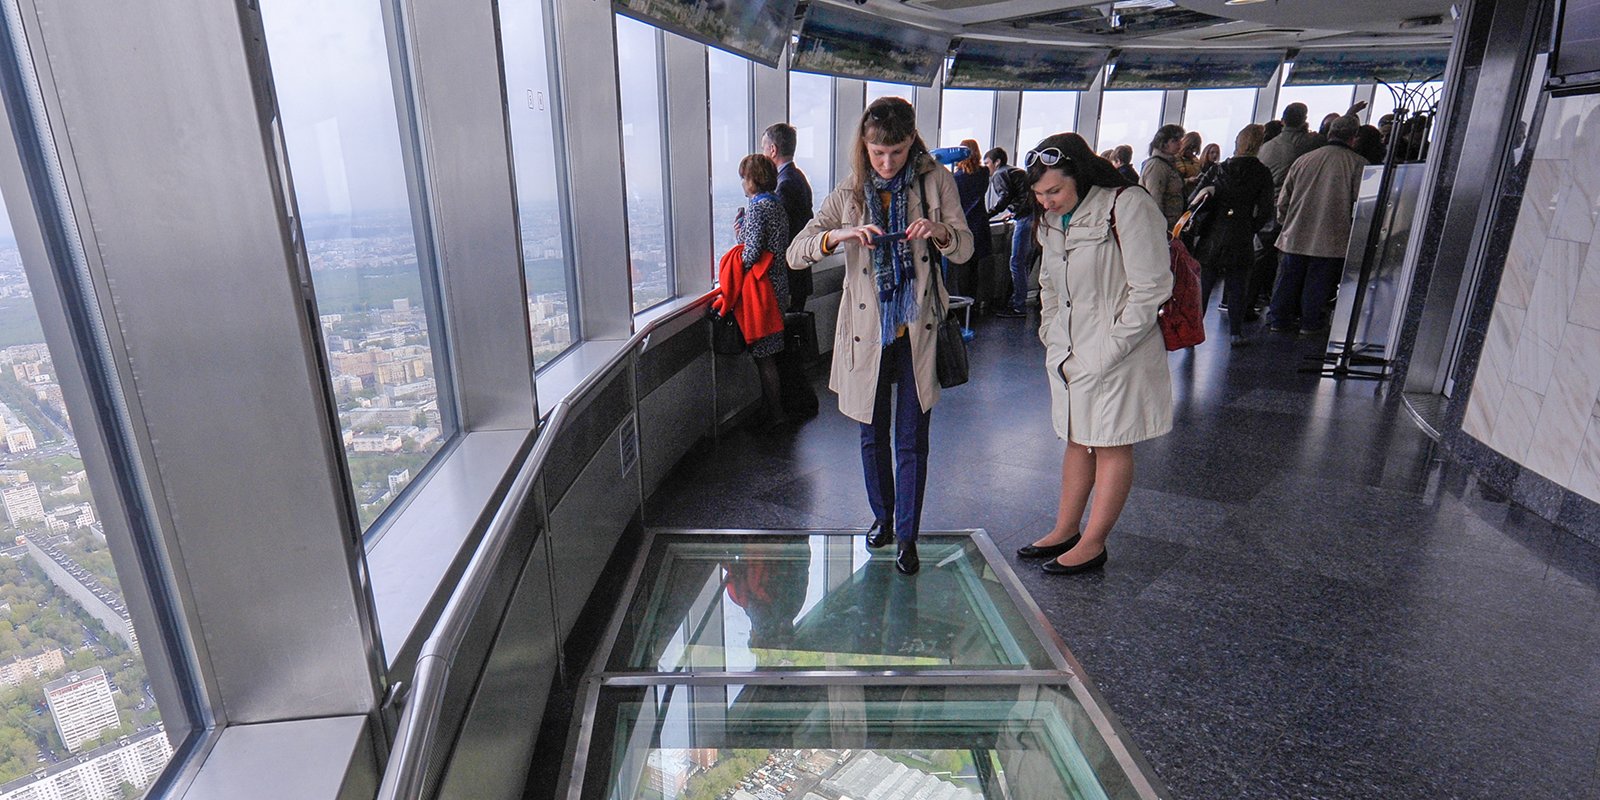 Экскурсия на Останкинскую башню впечатлит даже в пасмурную погоду